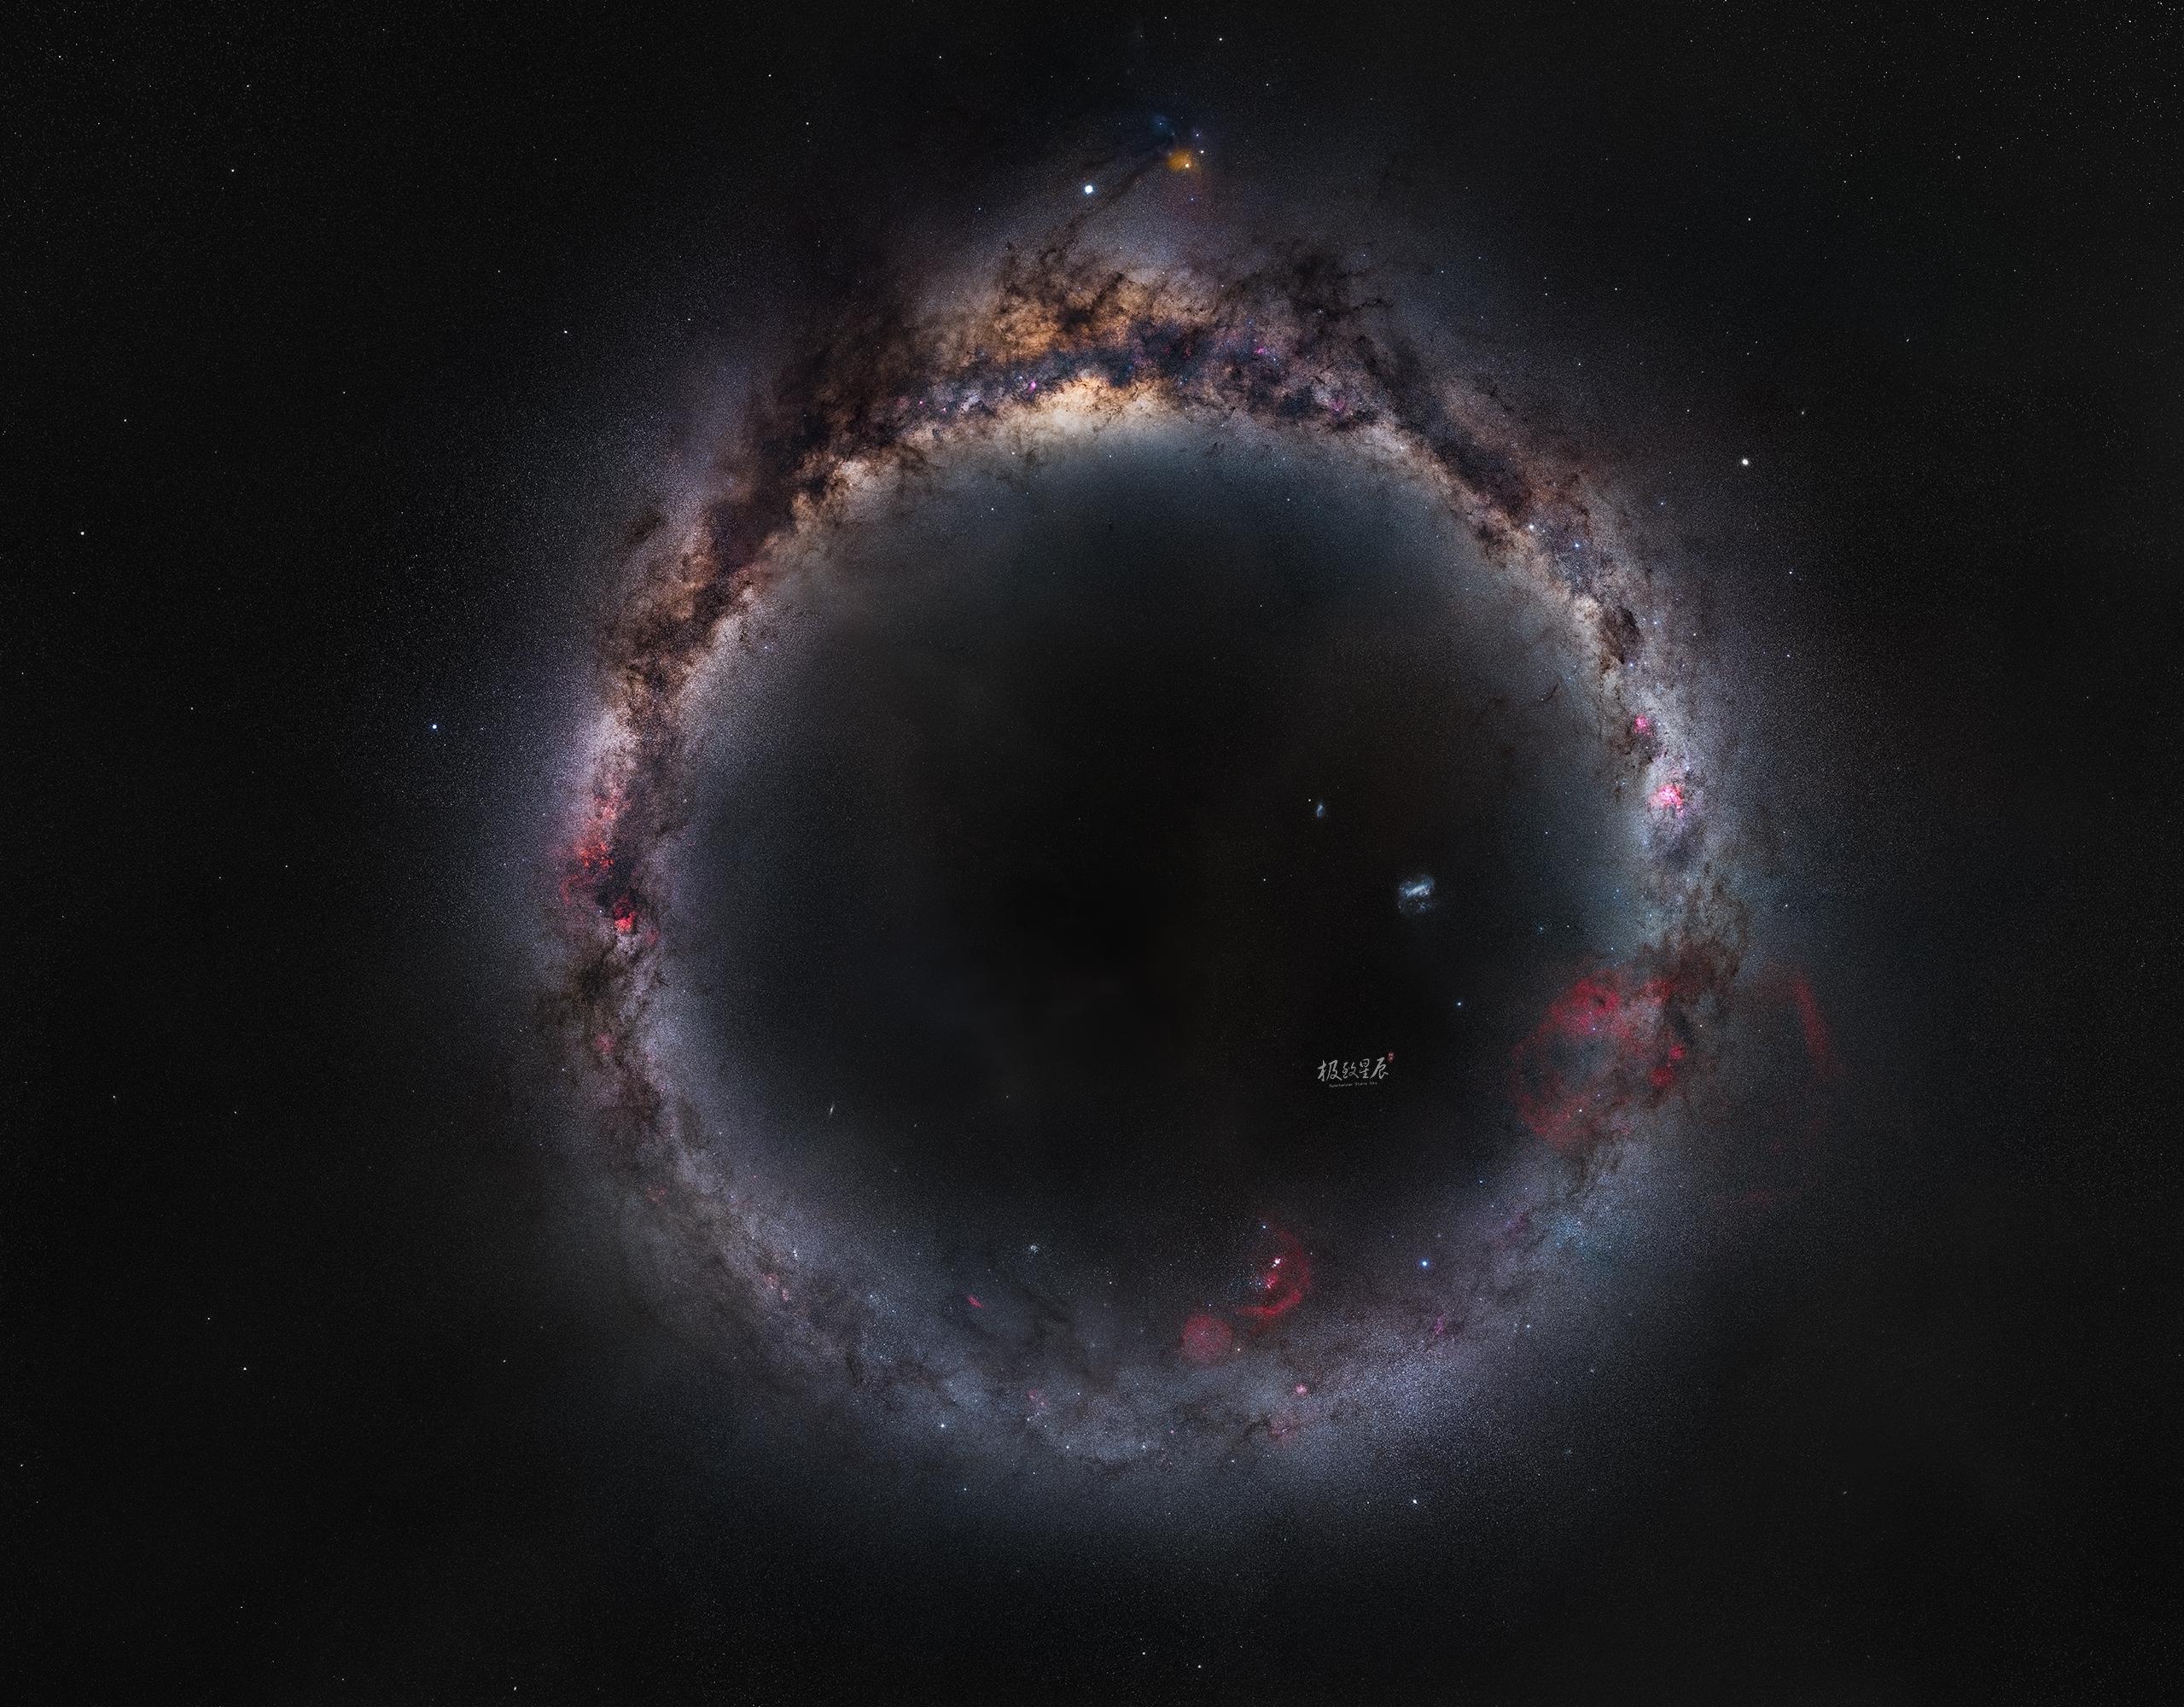 مسقط بانورامي يغطي كامل مجرة درب التبانة المرئي من الأرض بنصفيها، حيث يظهر بشكل حلقة تشبه الخاتم وفي أعلاها انتفاخ مركز المجرة كالجوهرة عليه ومن فوقه المشتري الساطع وقلب العقرب الأحمر العملاق. في الجهة المقابلة أسفل الصورة تقريباً تظهر سحابتا ماجلان.